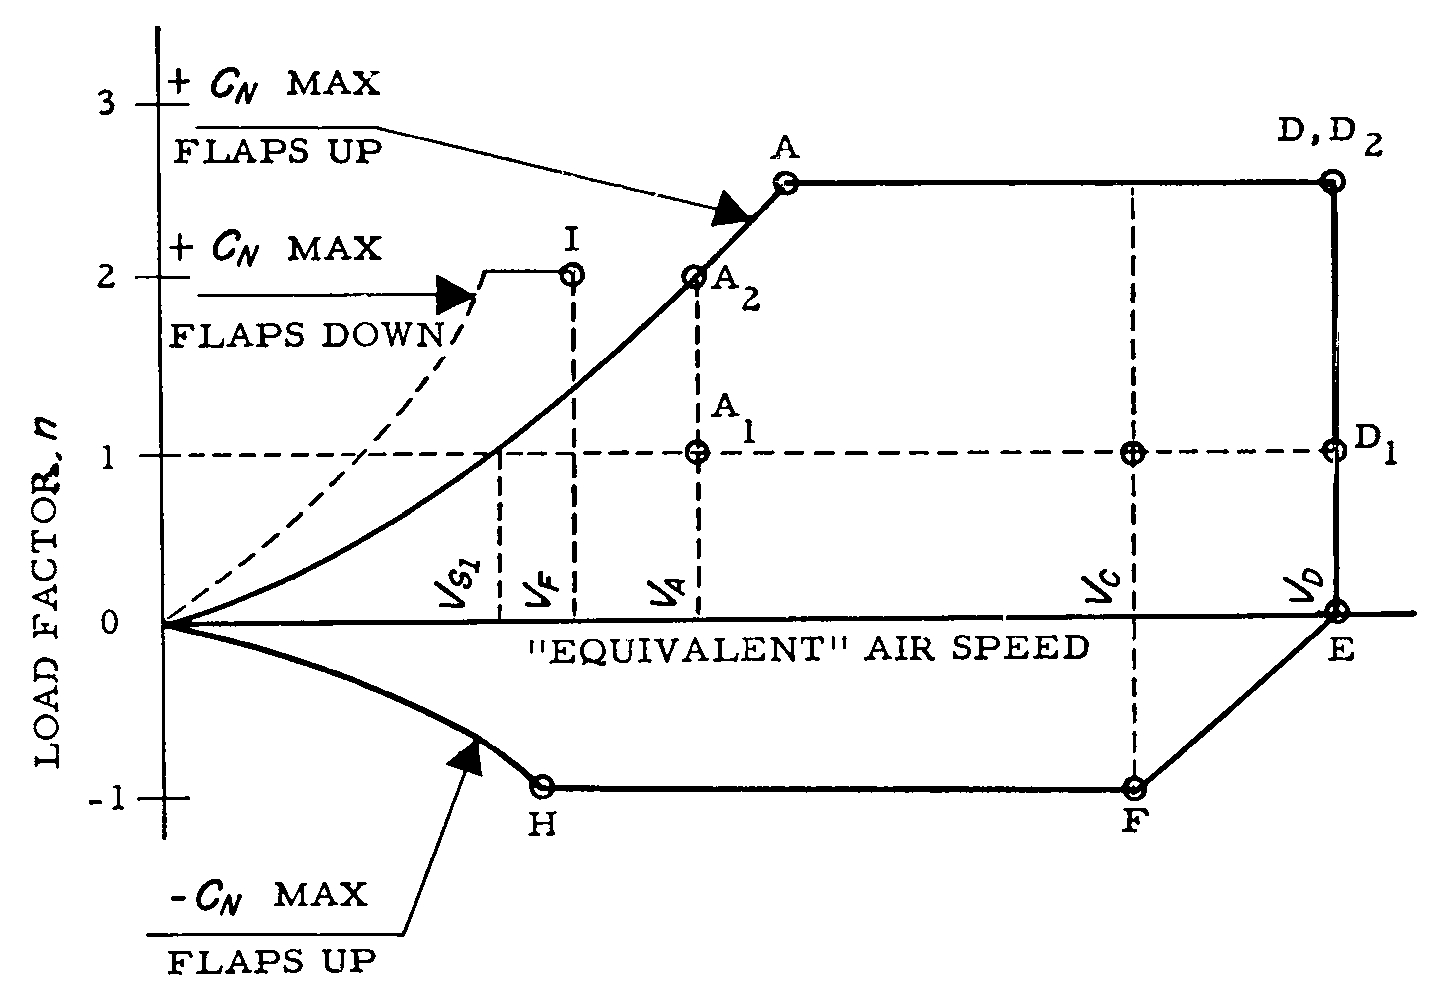 Graphic of (b) Maneuvering envelope.